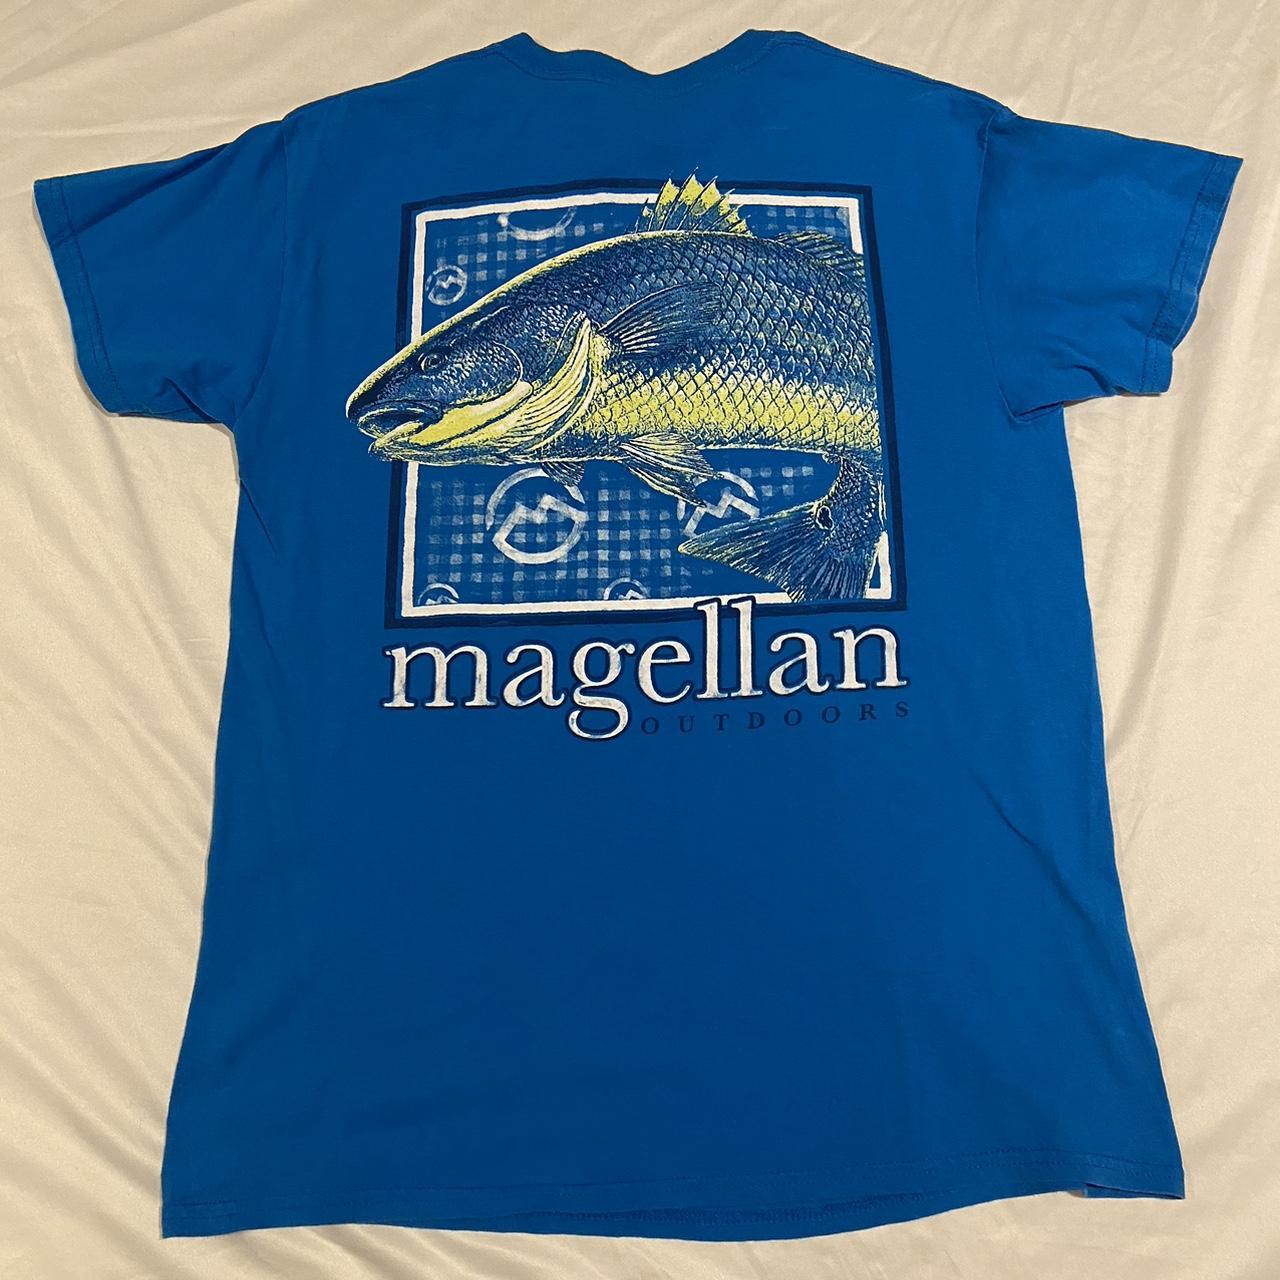 Magellan outdoors blue tee size medium -send offers - Depop